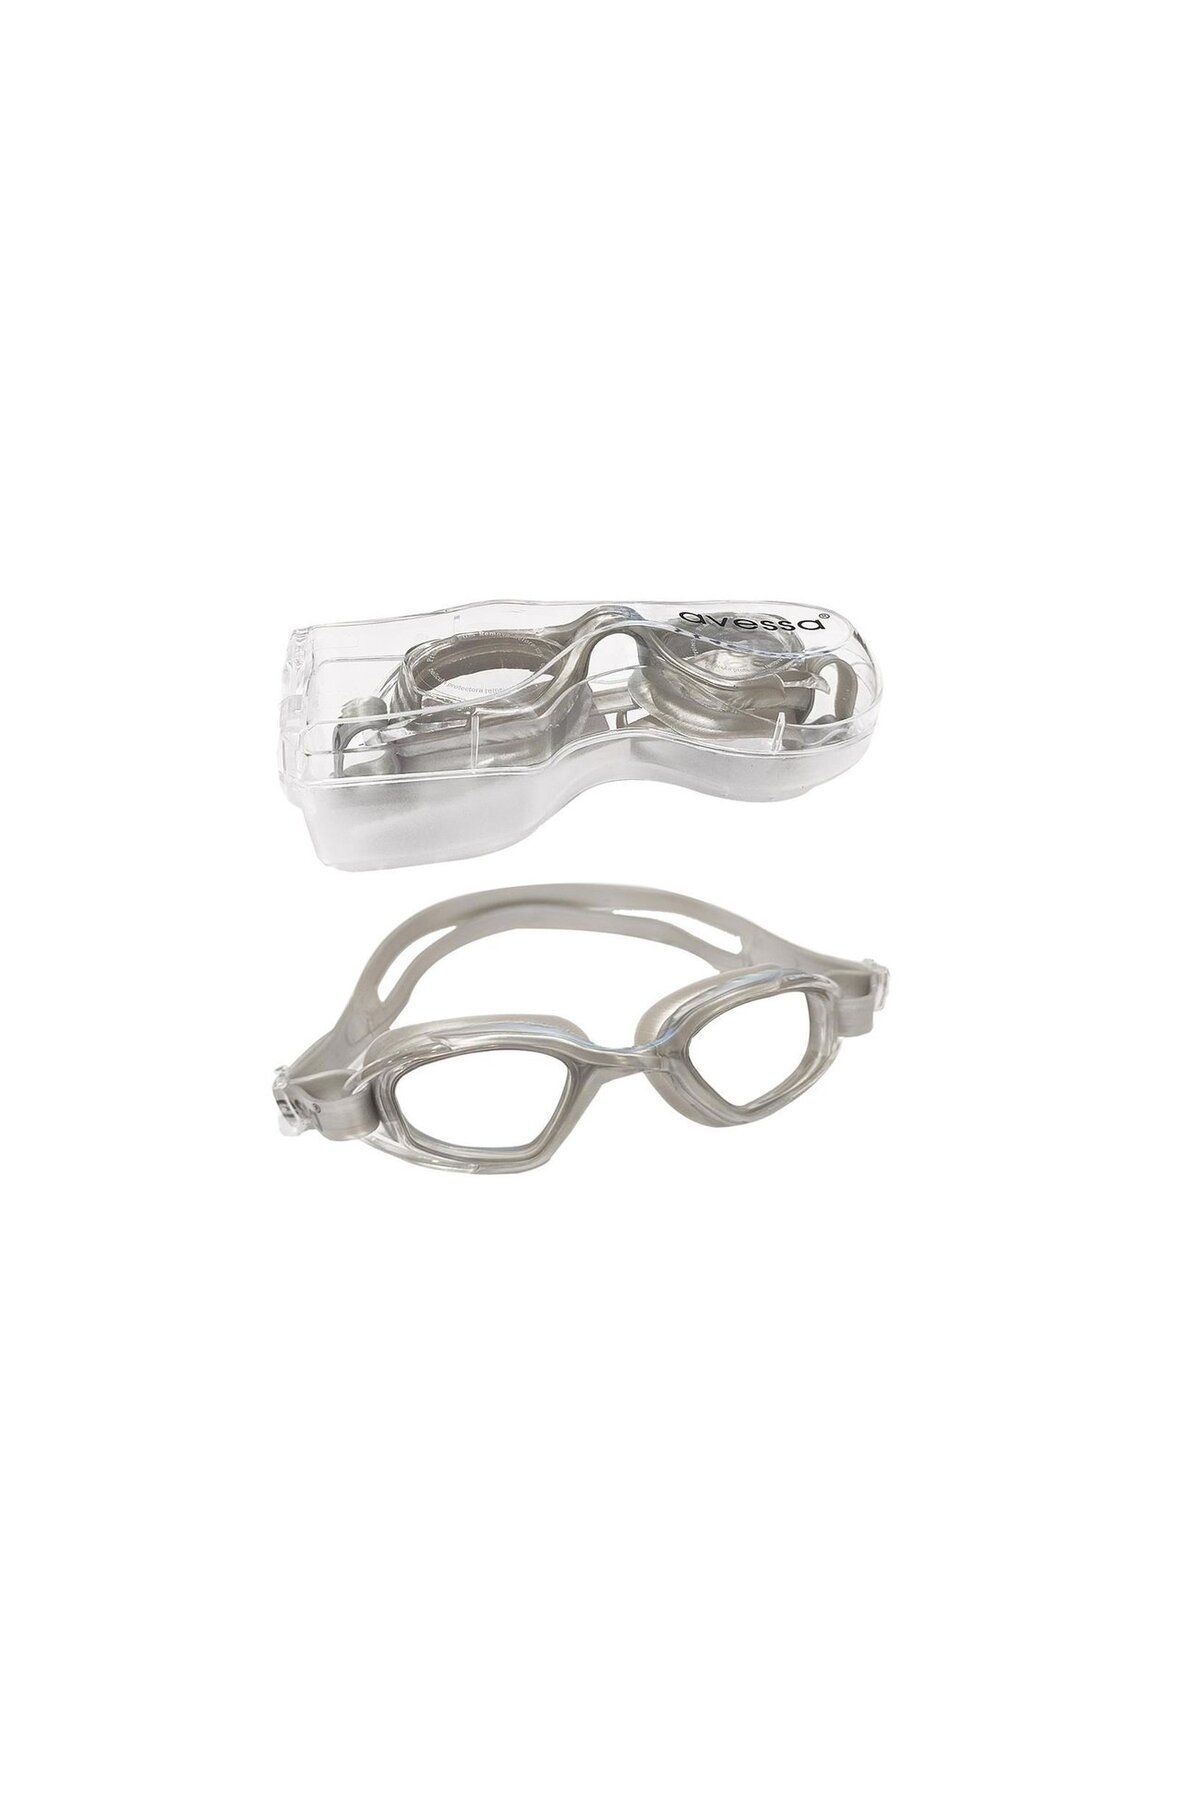 Avessa Yetişkin Yüzücü Gözlüğü - Deniz Gözlüğü - Havuz Gözlüğü - Kadın Erkek Büyük Gözlük Gözlüğü